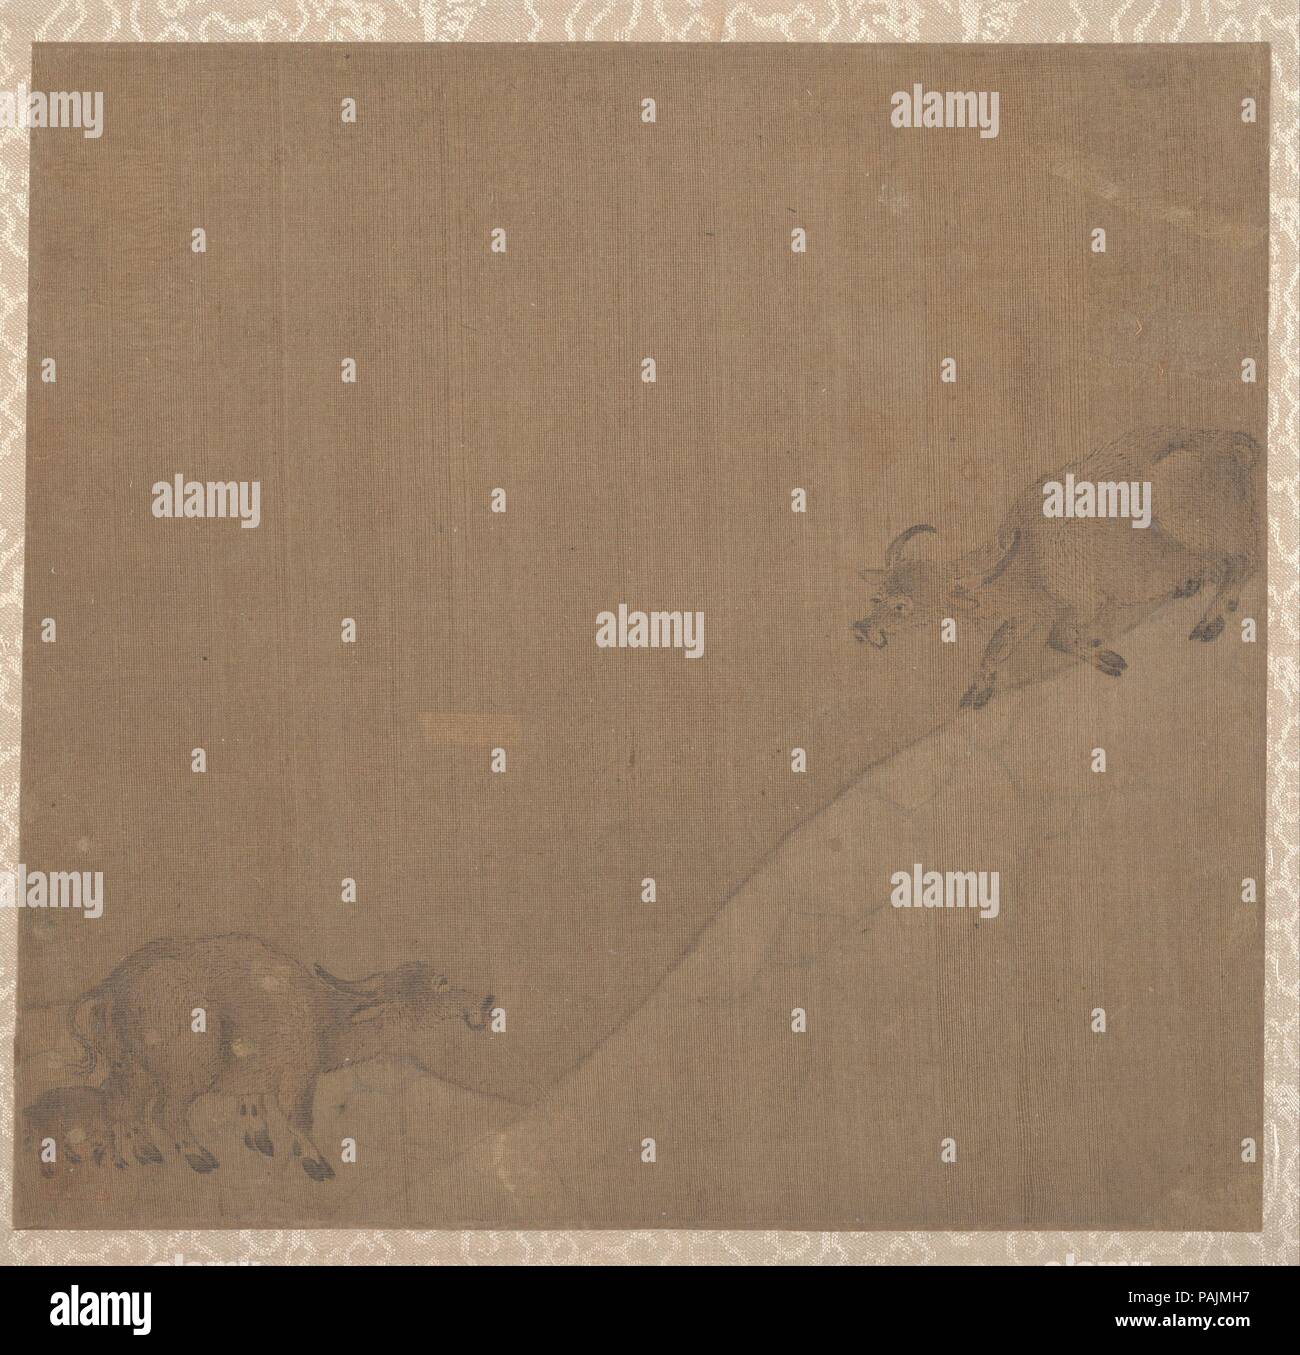 Bufali d'acqua. Artista: artista non identificato. Cultura: la Cina. Dimensioni: 9 1/8 x 9 1/2 in. (23,2 x 24,1 cm). Museo: Metropolitan Museum of Art di New York, Stati Uniti d'America. Foto Stock